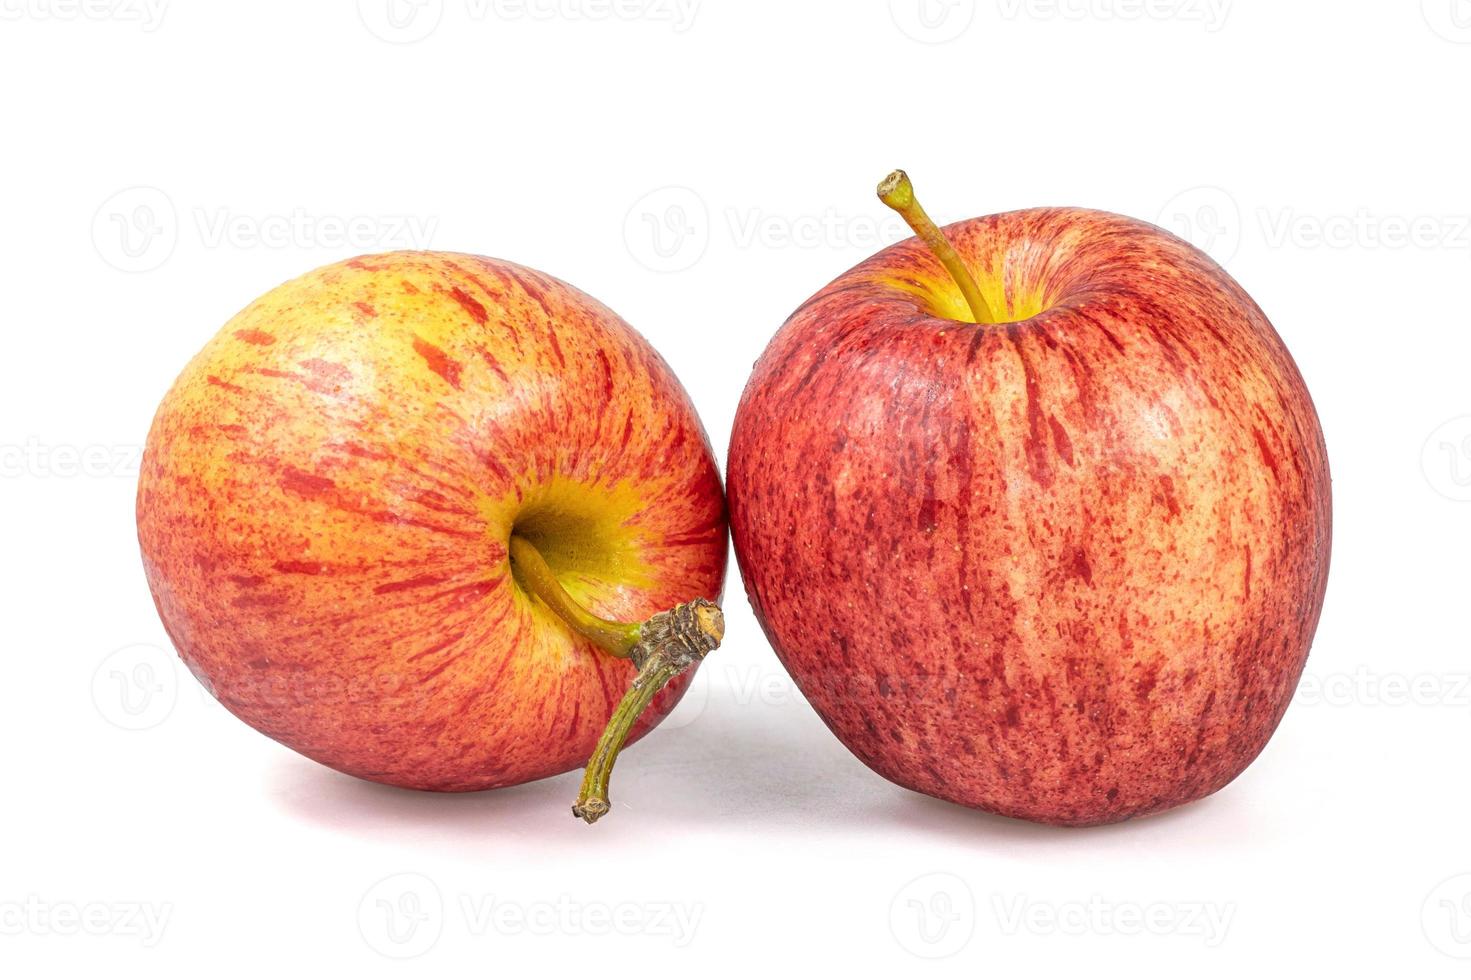 manzanas gala aislar sobre fondo blanco con trazado de recorte foto